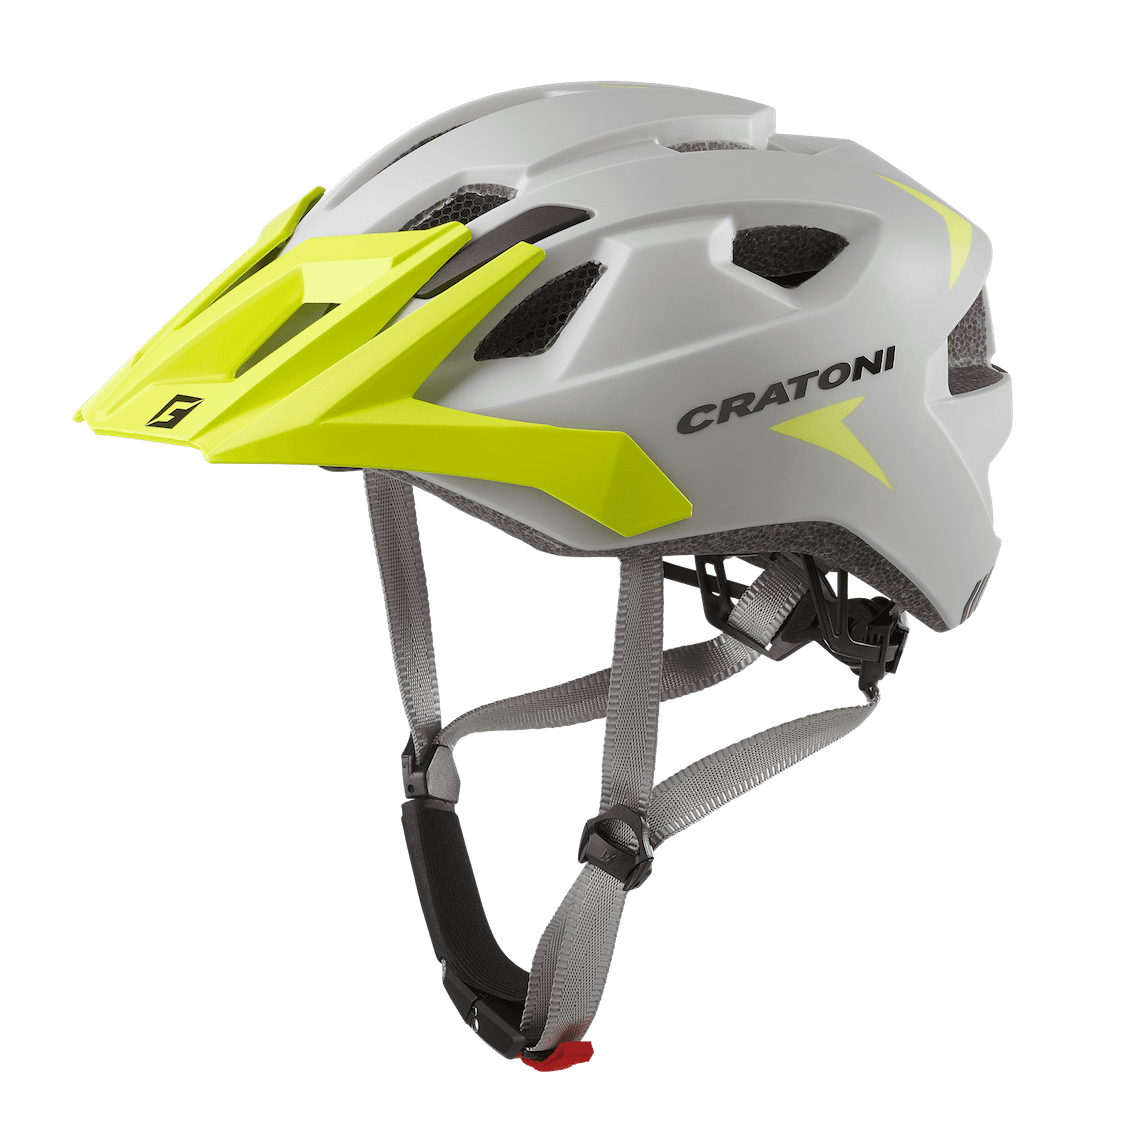 Велосипедный шлем Cratoni Allride, grey/lime, One Size